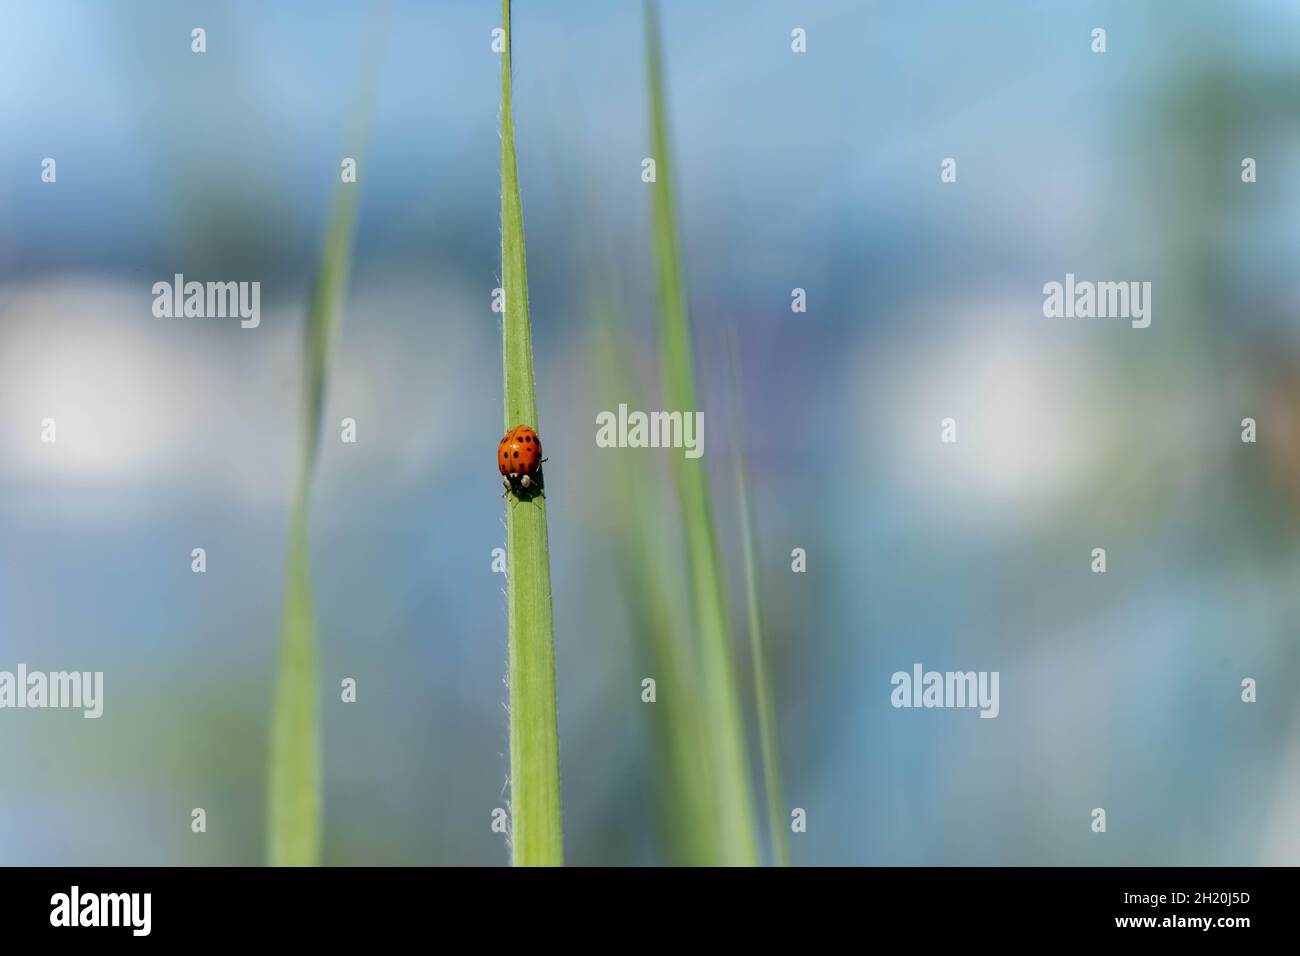 Ladybug on green leaf Stock Photo